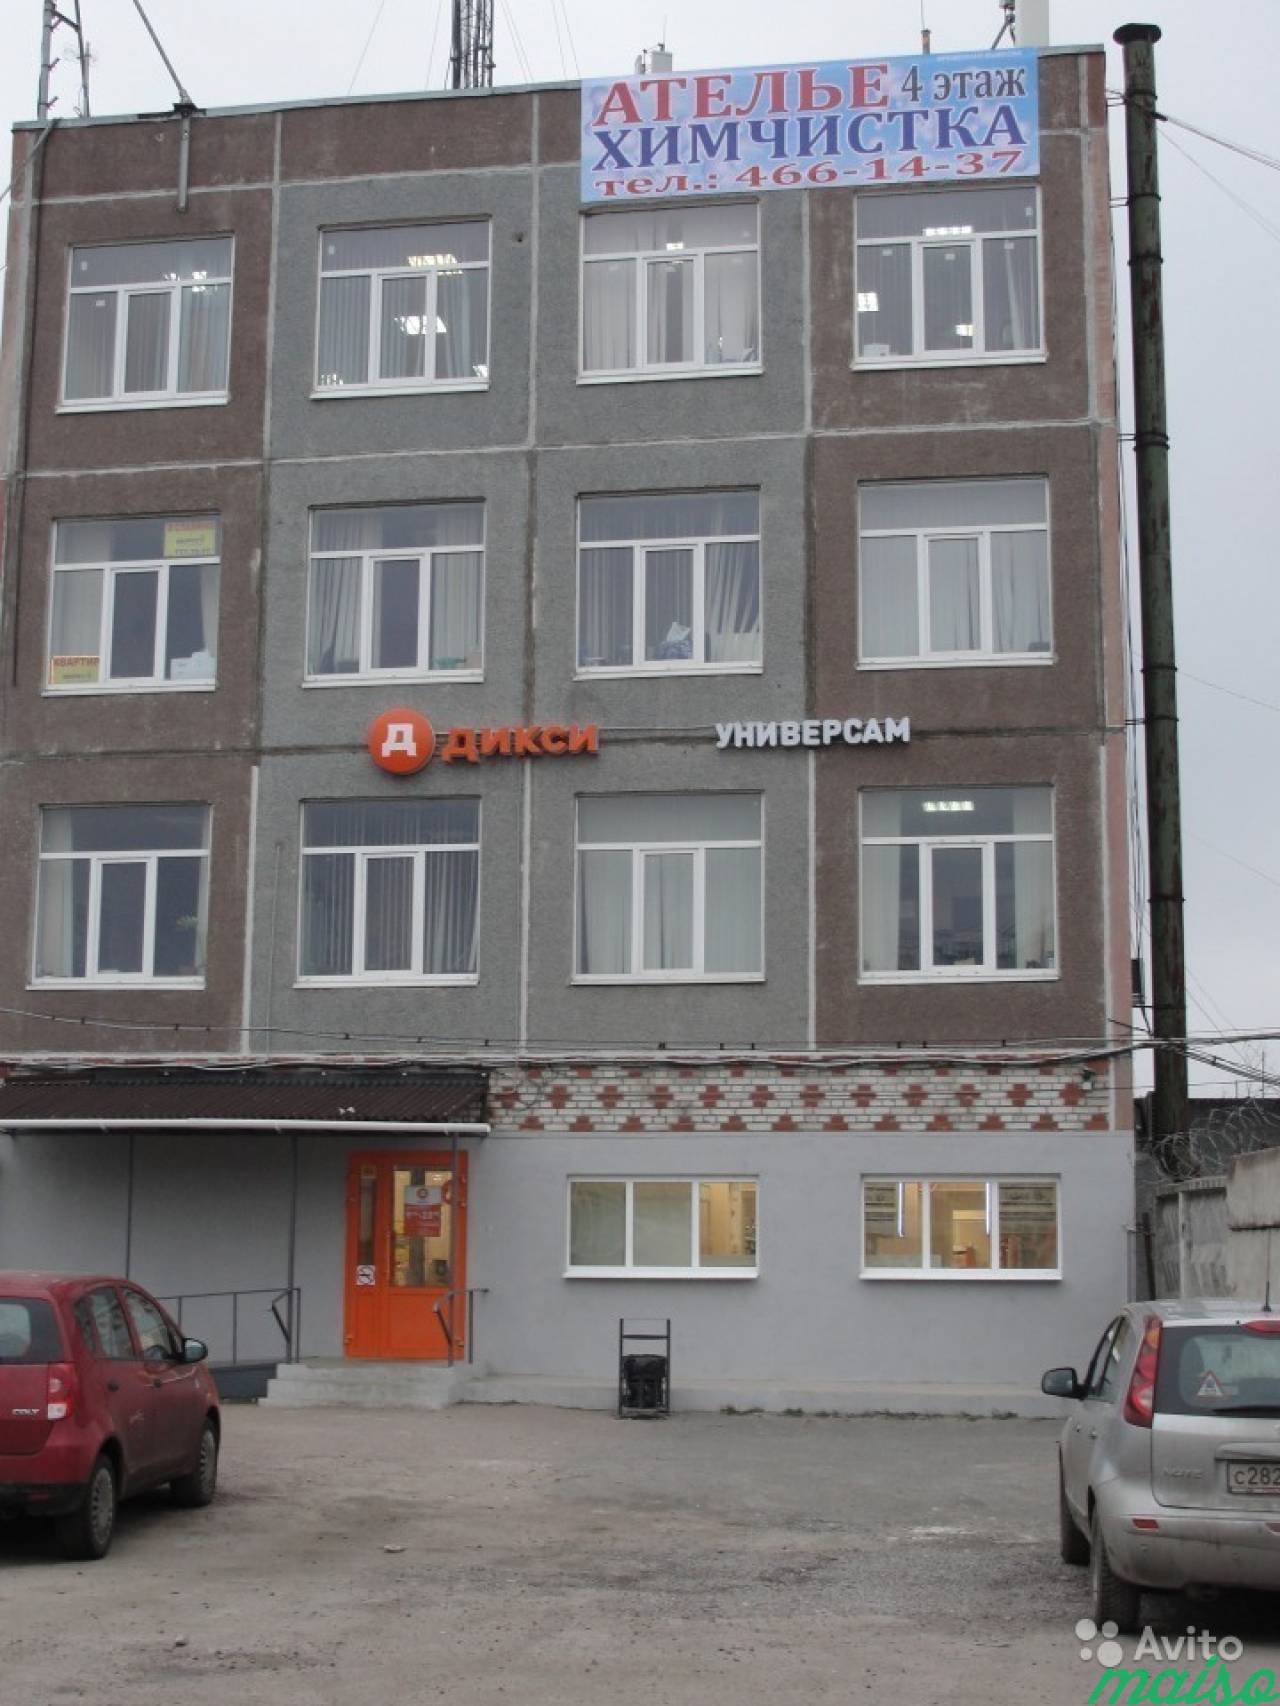 Офисное помещение в Славянке, от 12 м² до 500 м² в Санкт-Петербурге. Фото 3